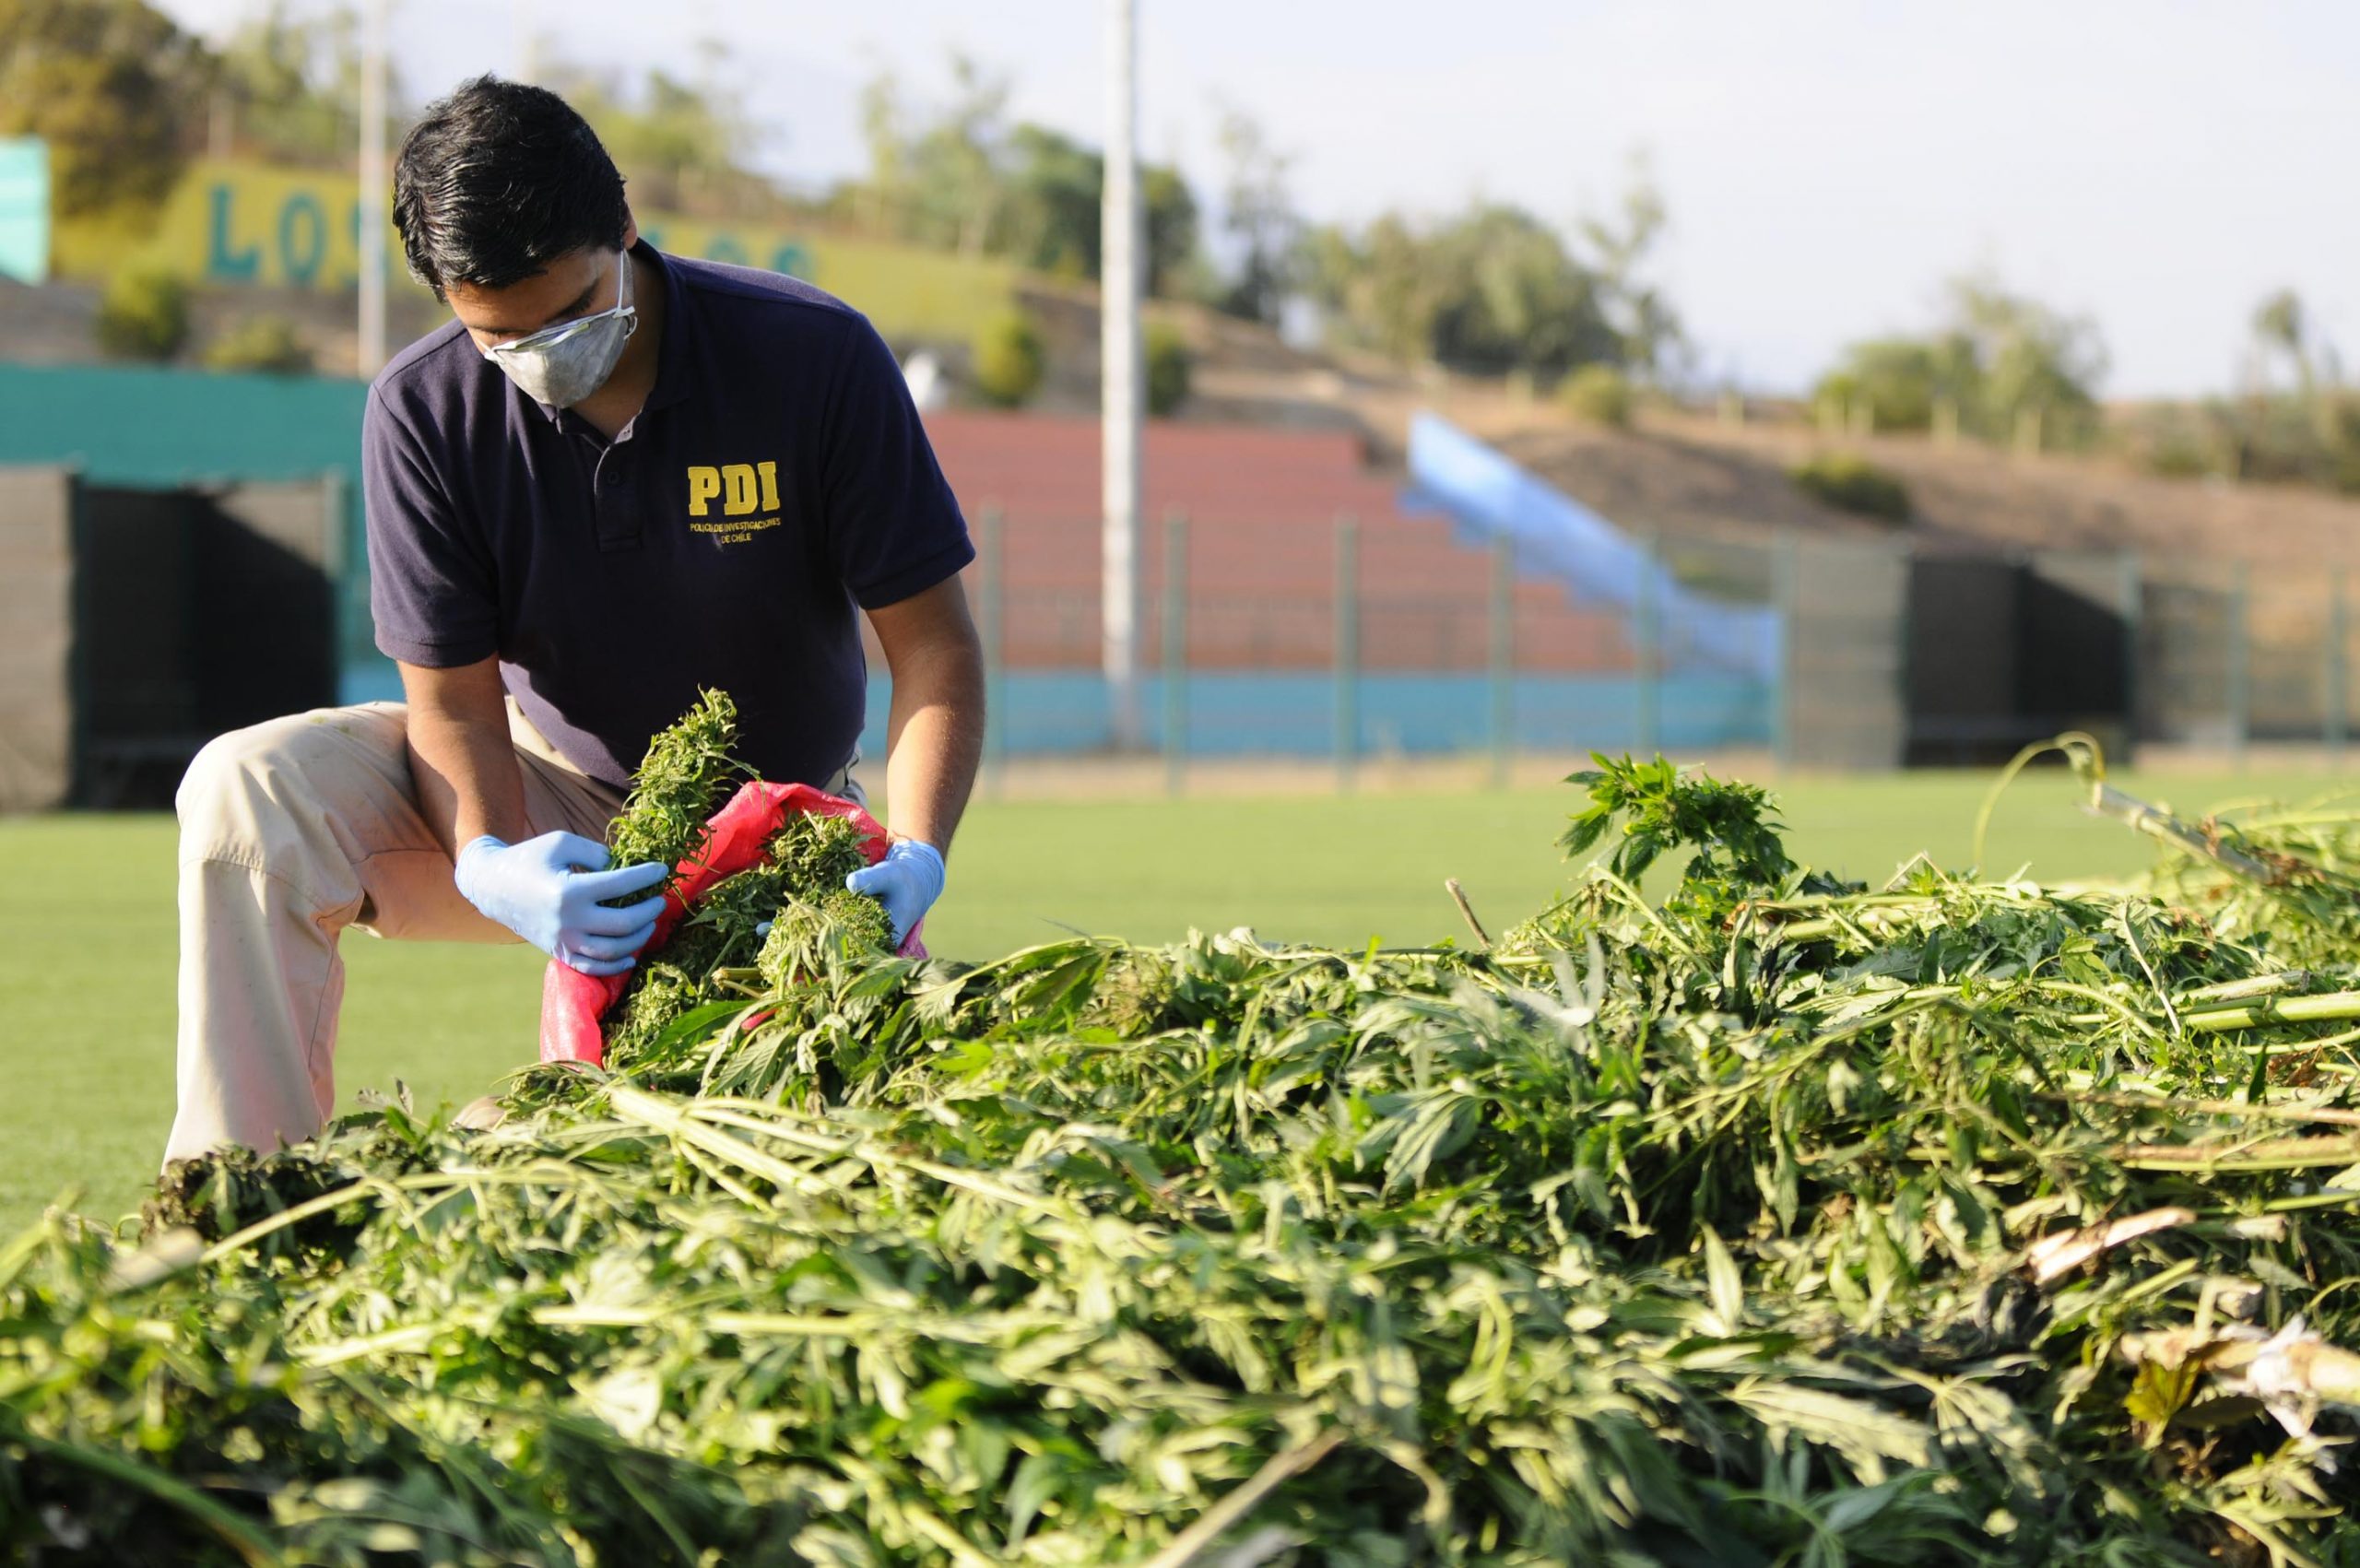 POLICIAL: PDI de San Felipe detiene a sujeto que cultivaba marihuana en un Fundo